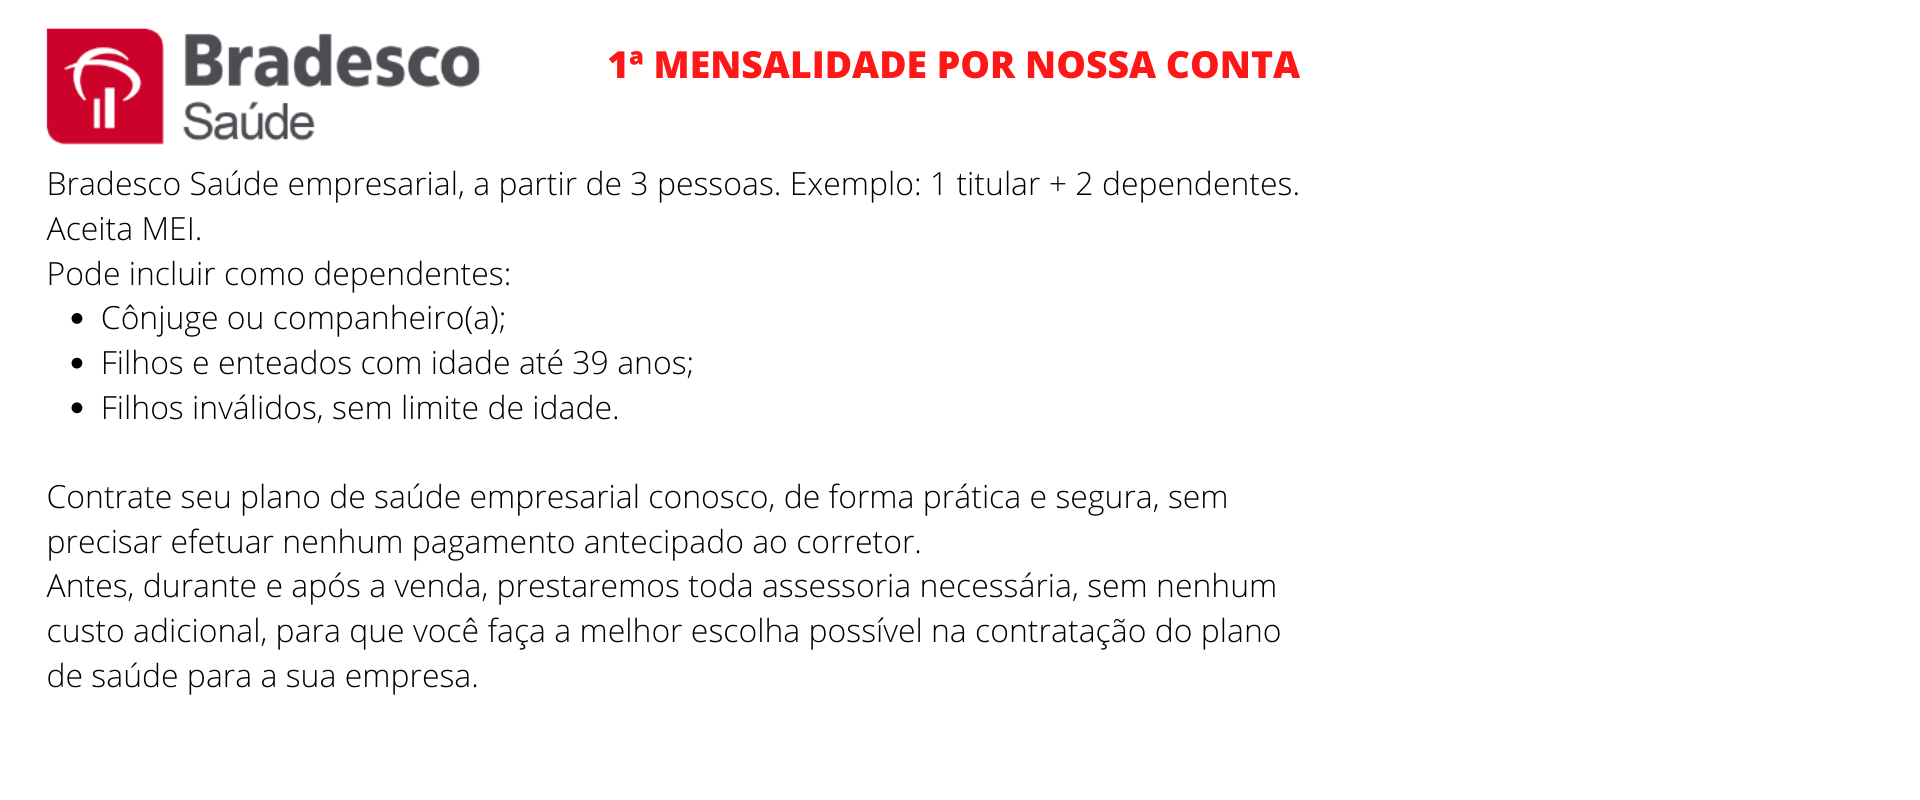 Bradesco Saúde Empresarial - Serra